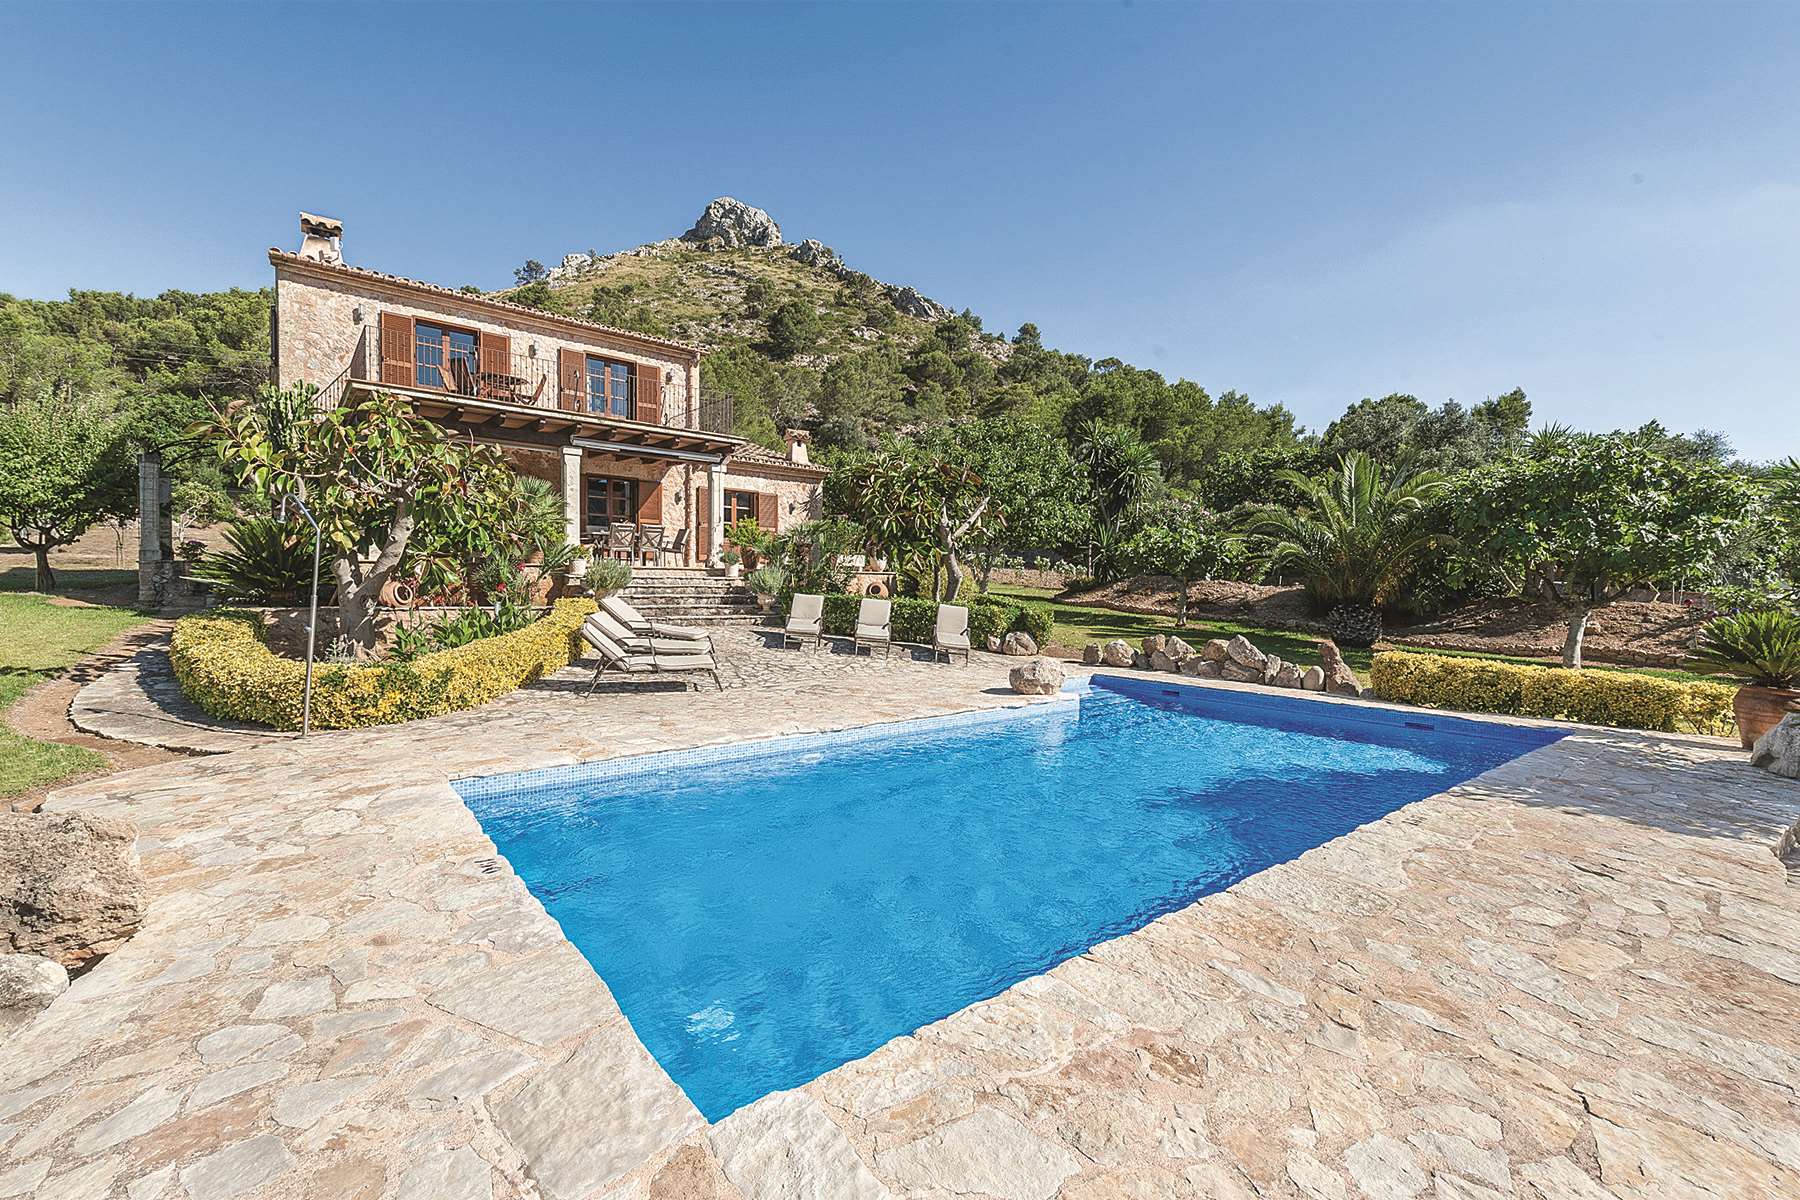 A James Villas holiday home in Mallorca